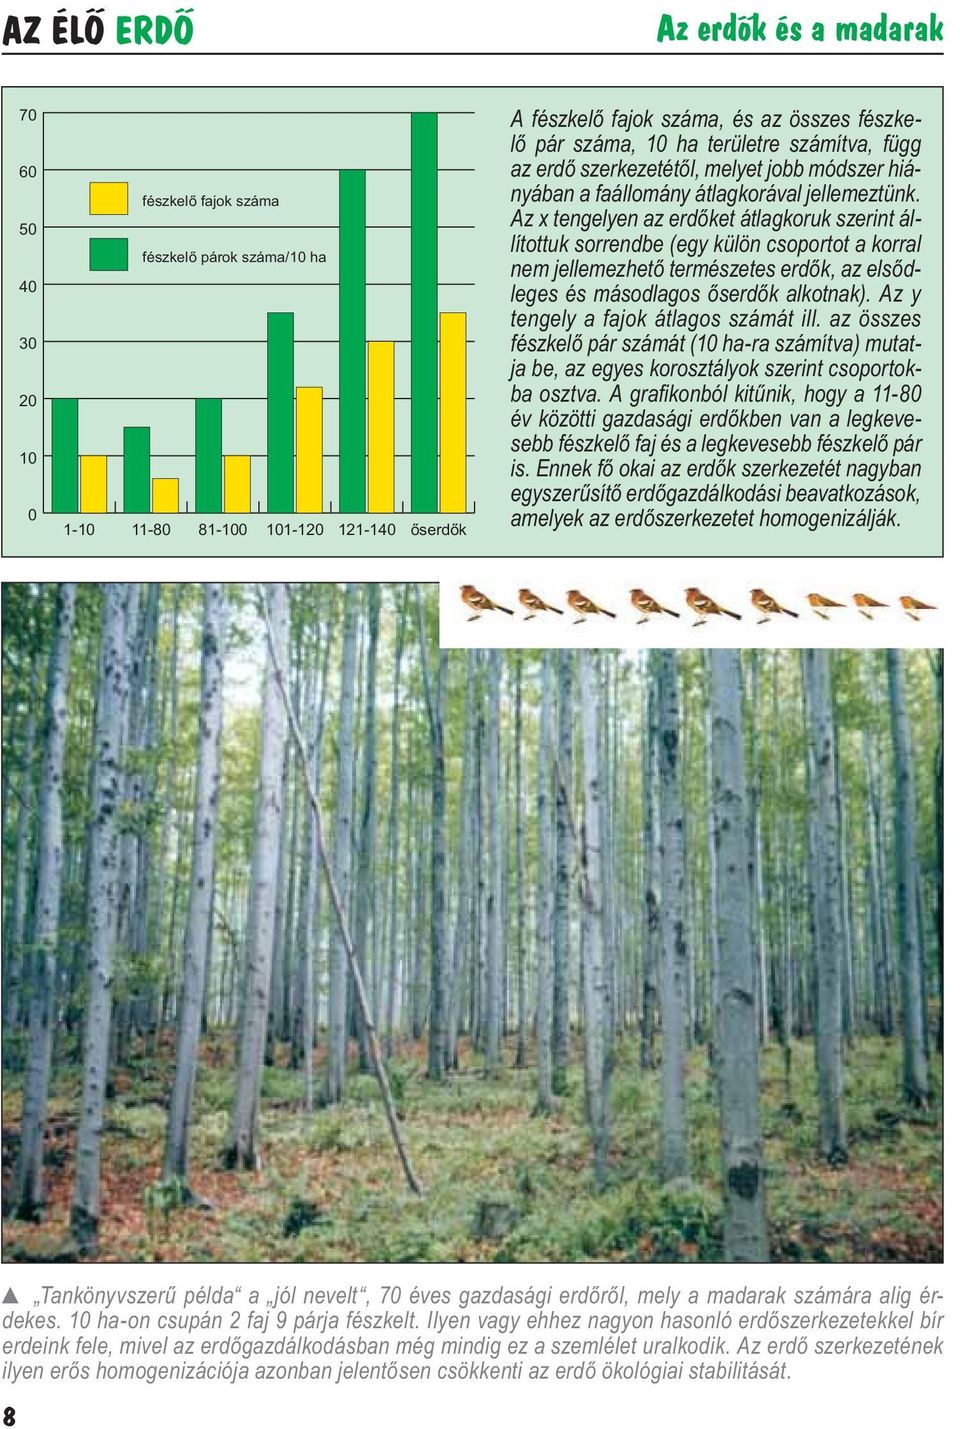 Az x tengelyen az erdőket átlagkoruk szerint állítottuk sorrendbe (egy külön csoportot a korral nem jellemezhető természetes erdők, az elsődleges és másodlagos őserdők alkotnak).